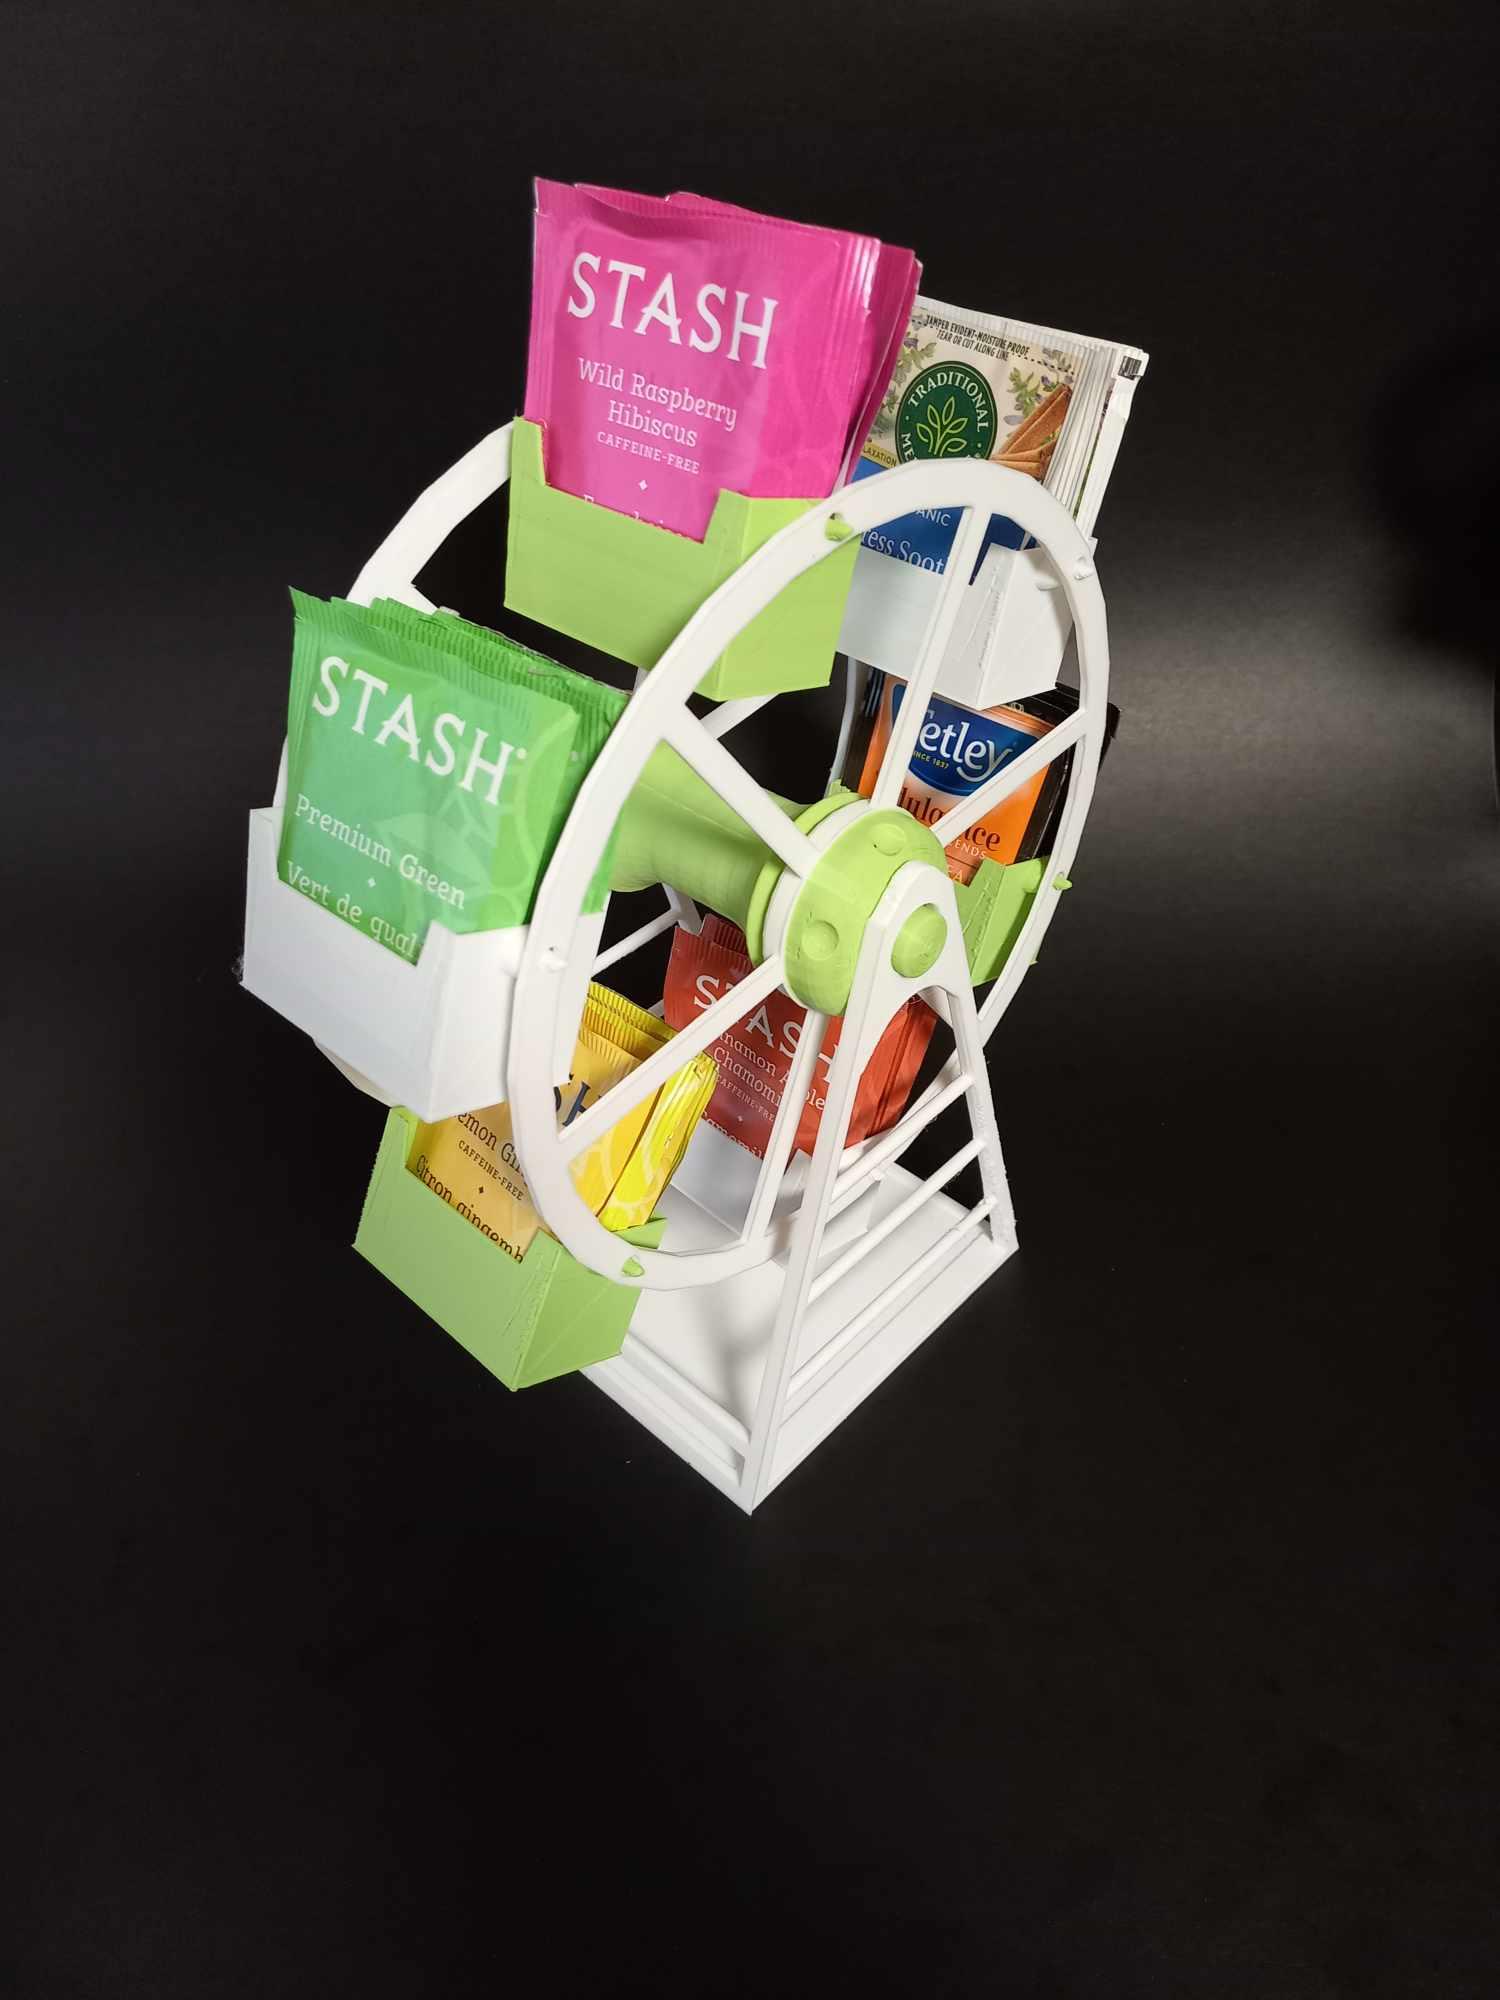 Teabag Ferris Wheel (The Teabagger) - Easy to print - Easy to assemble 3d model